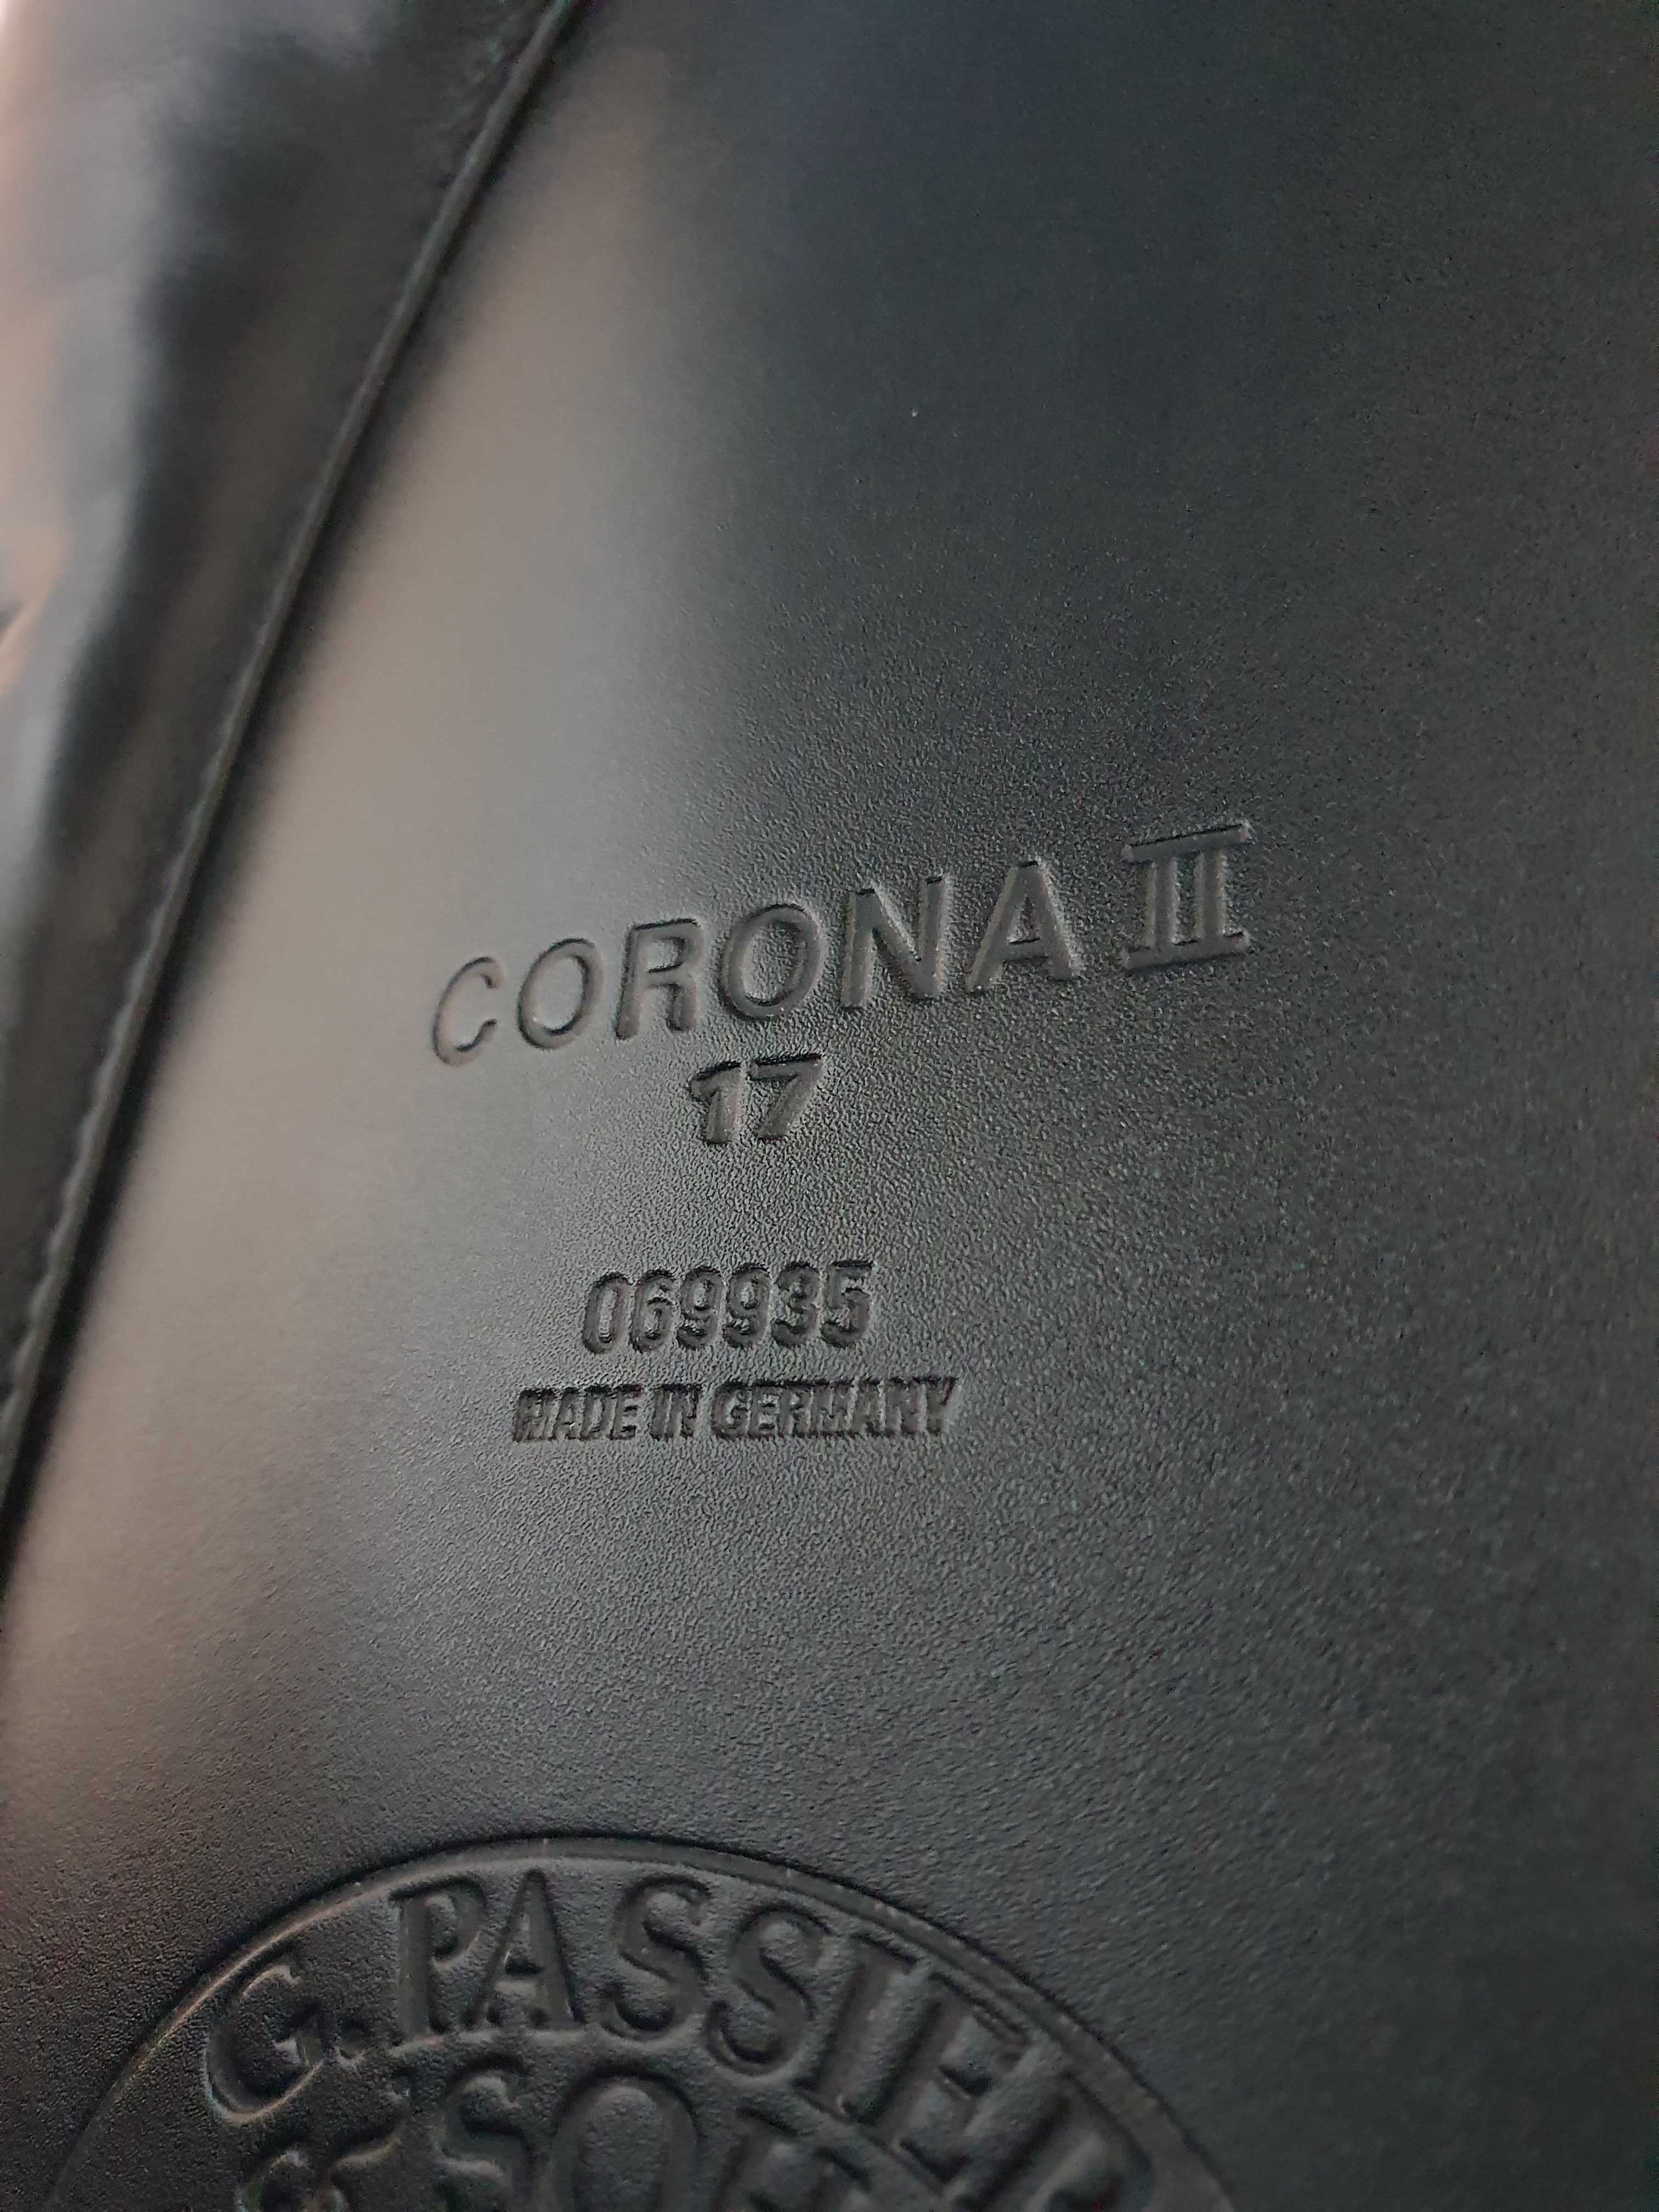 Siodło ujeżdżeniowe Passier Corona II 17 cali